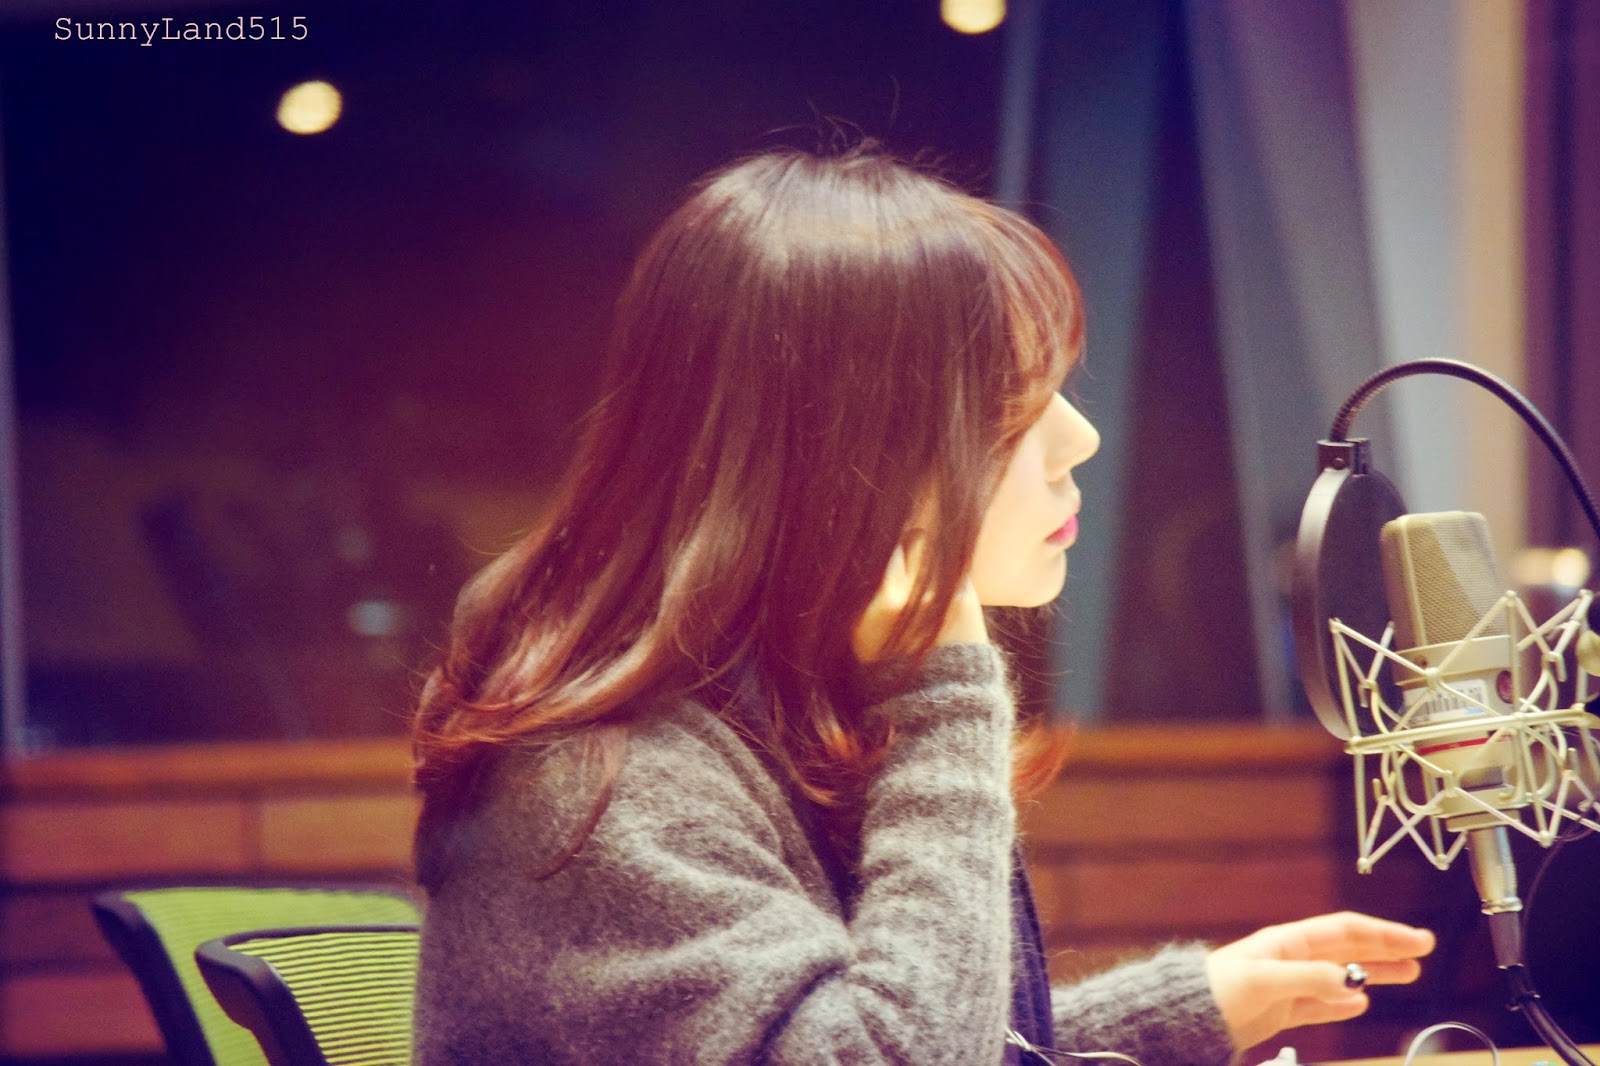 [OTHER][06-02-2015]Hình ảnh mới nhất từ DJ Sunny tại Radio MBC FM4U - "FM Date" - Page 10 DSC_0259_Fotor